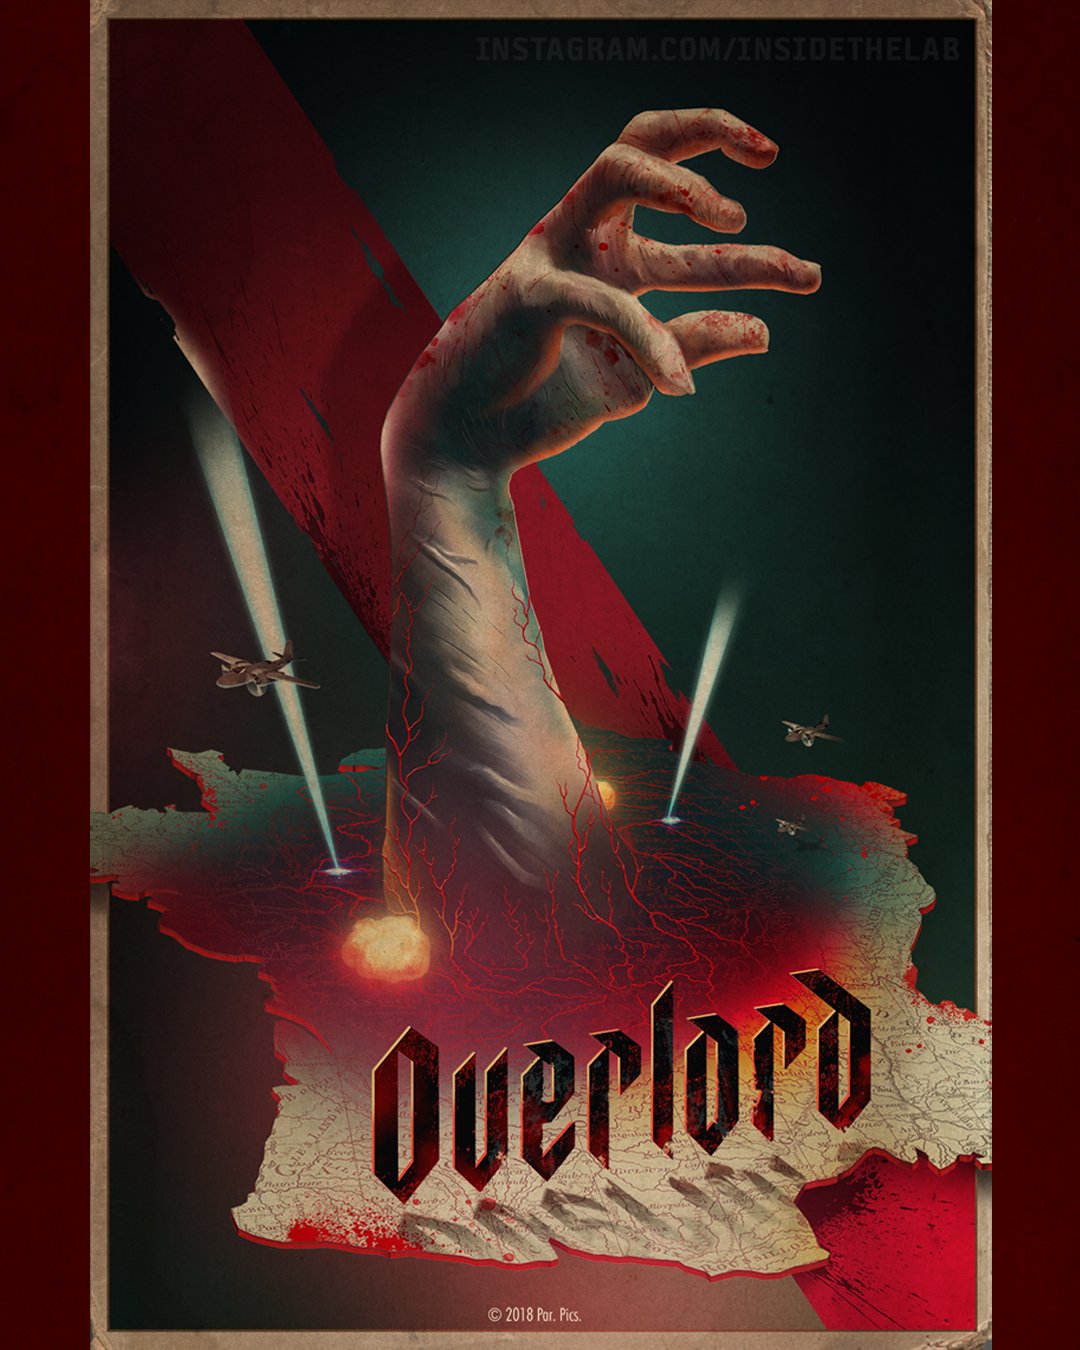 Operação Overlord (Legendado) – Filmes no Google Play